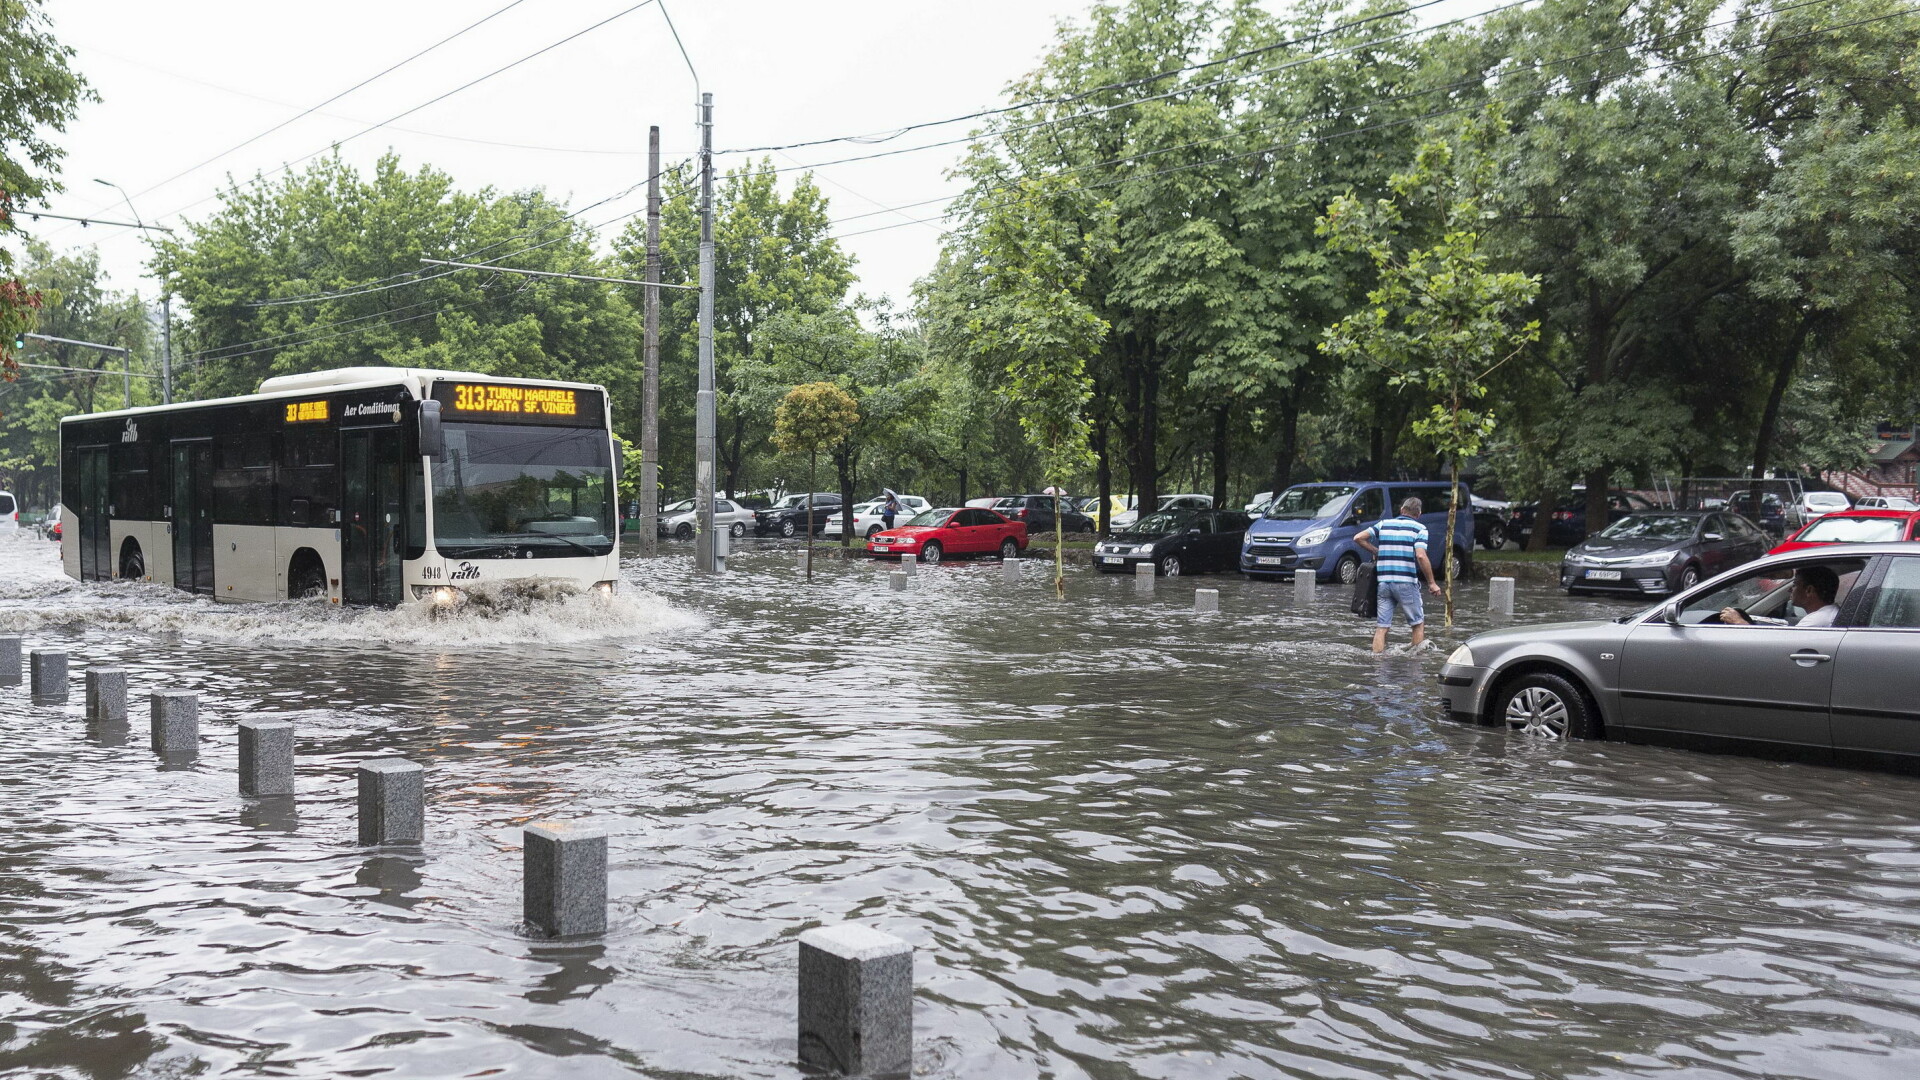 Inundatii Bucuresti